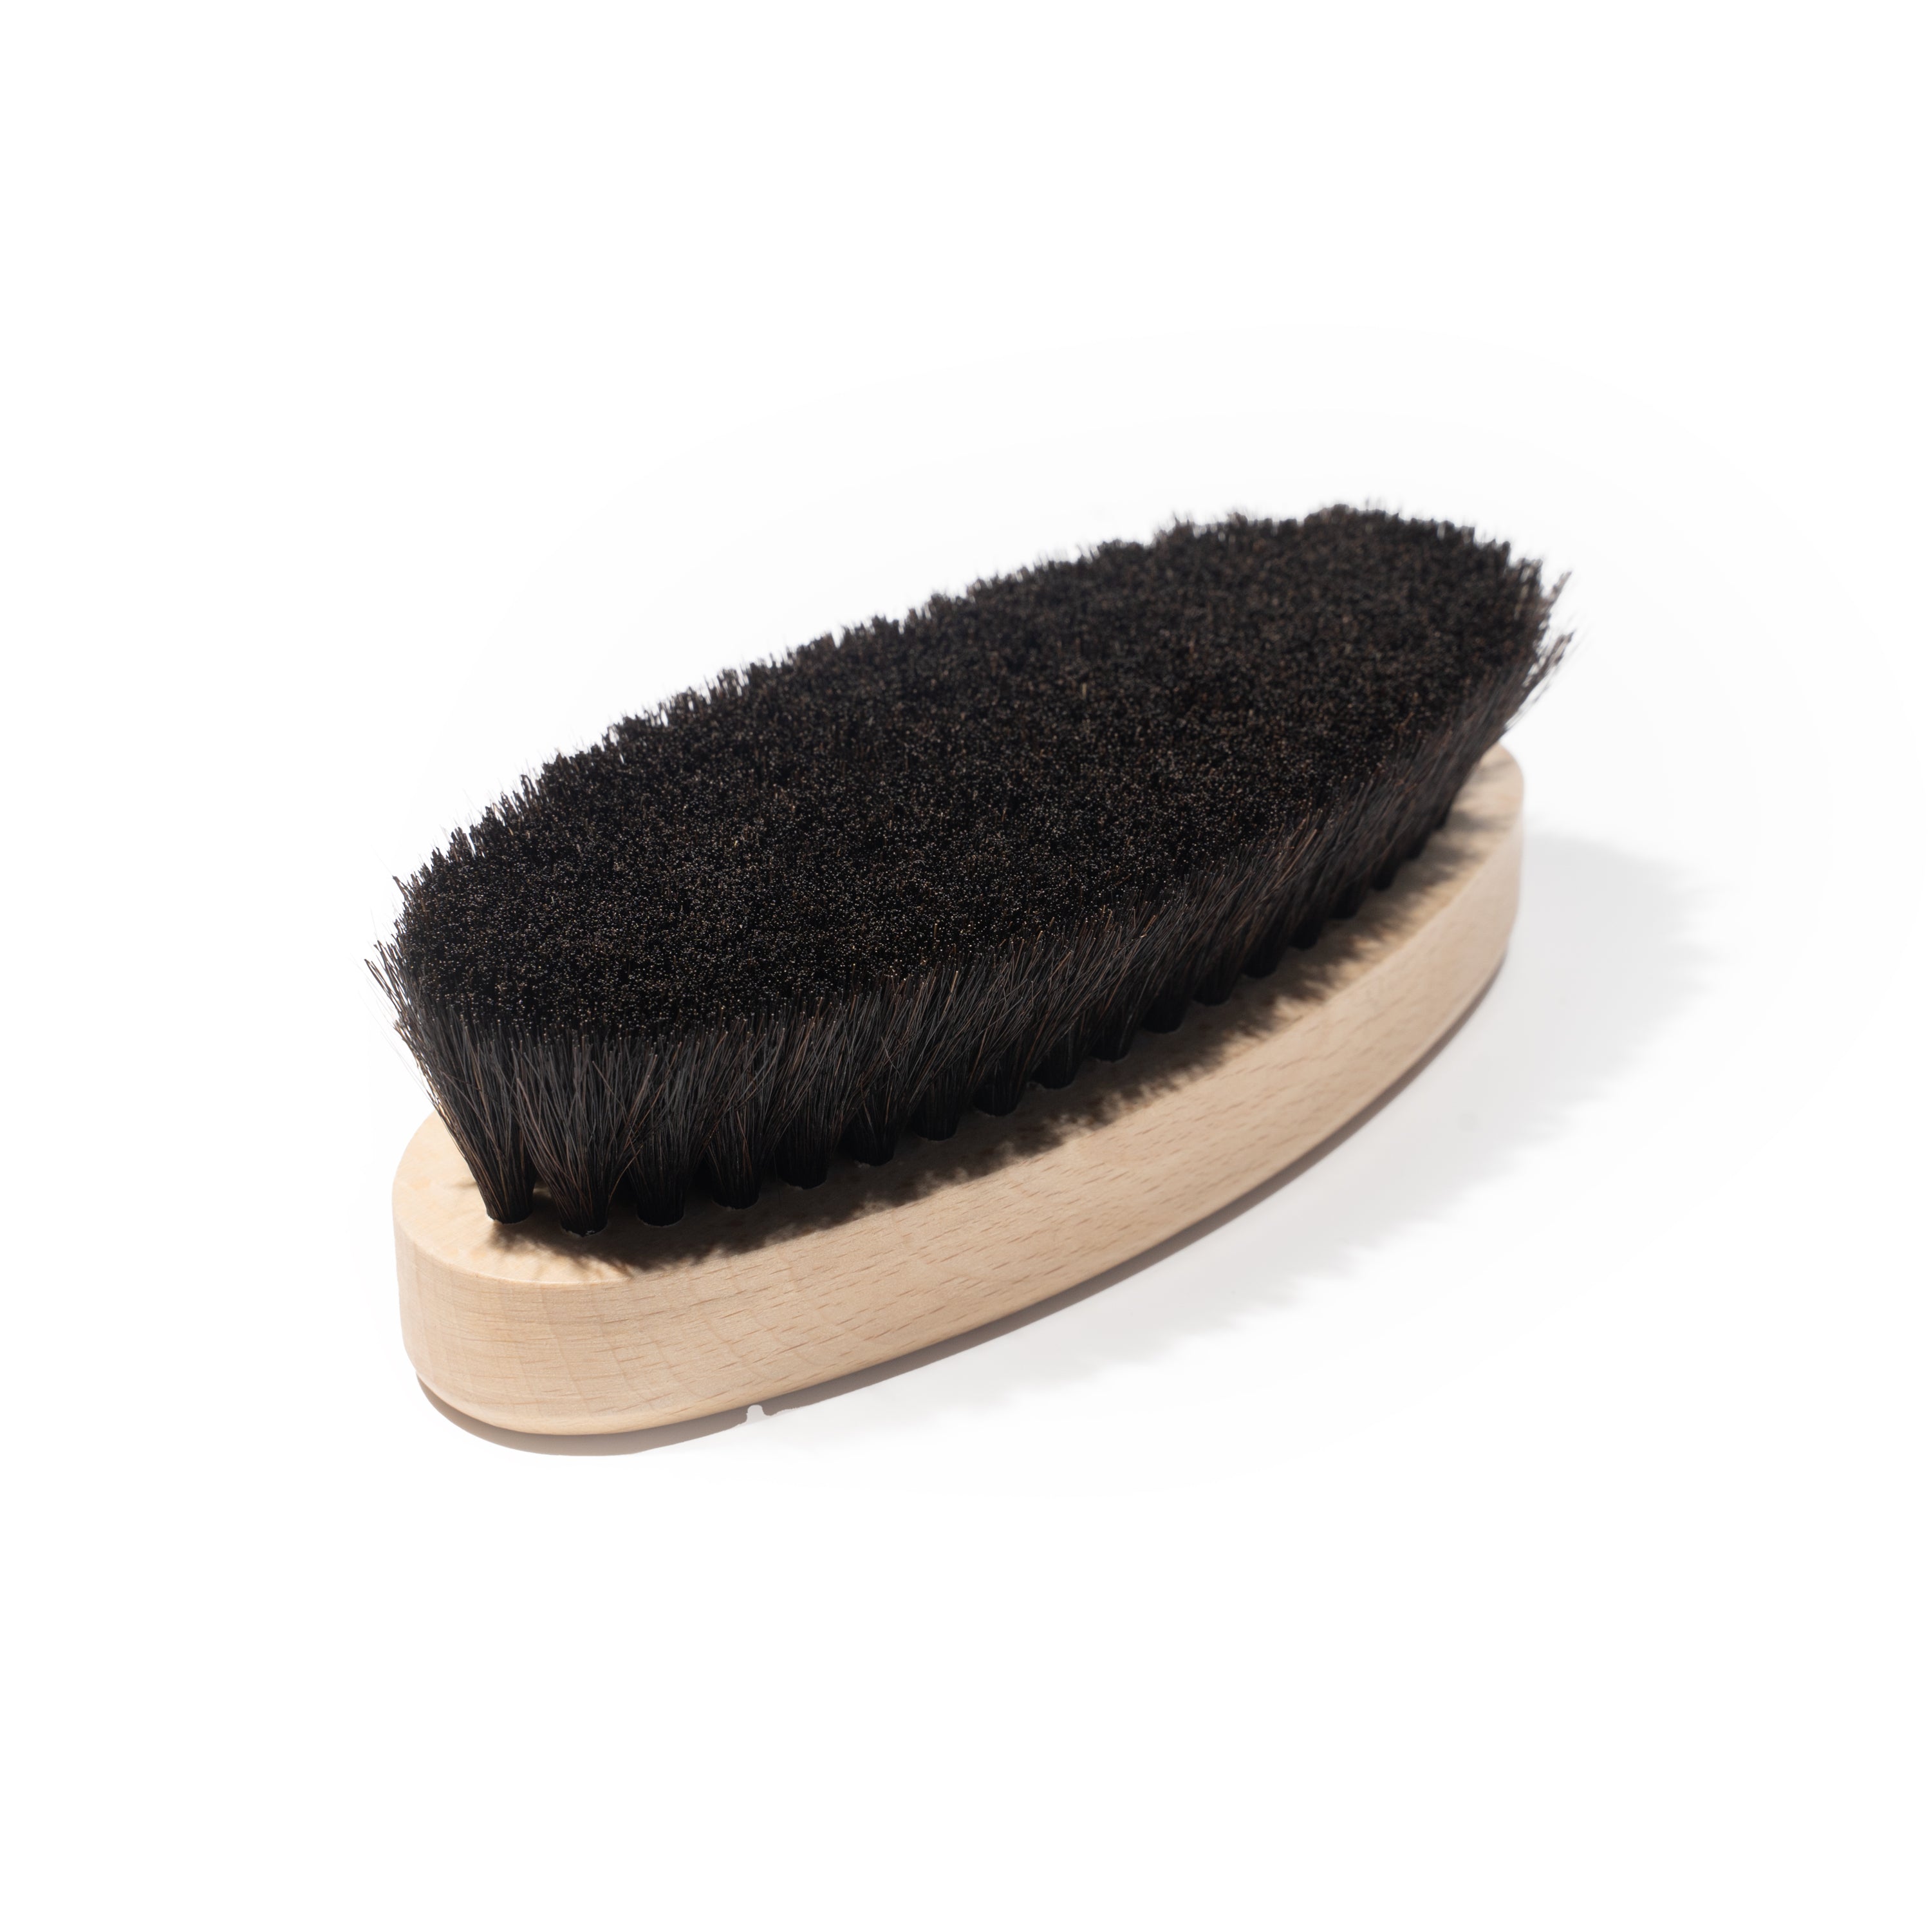 Saphir Beaute du Cuir - Oval Hosehair Brush - Black Bristles